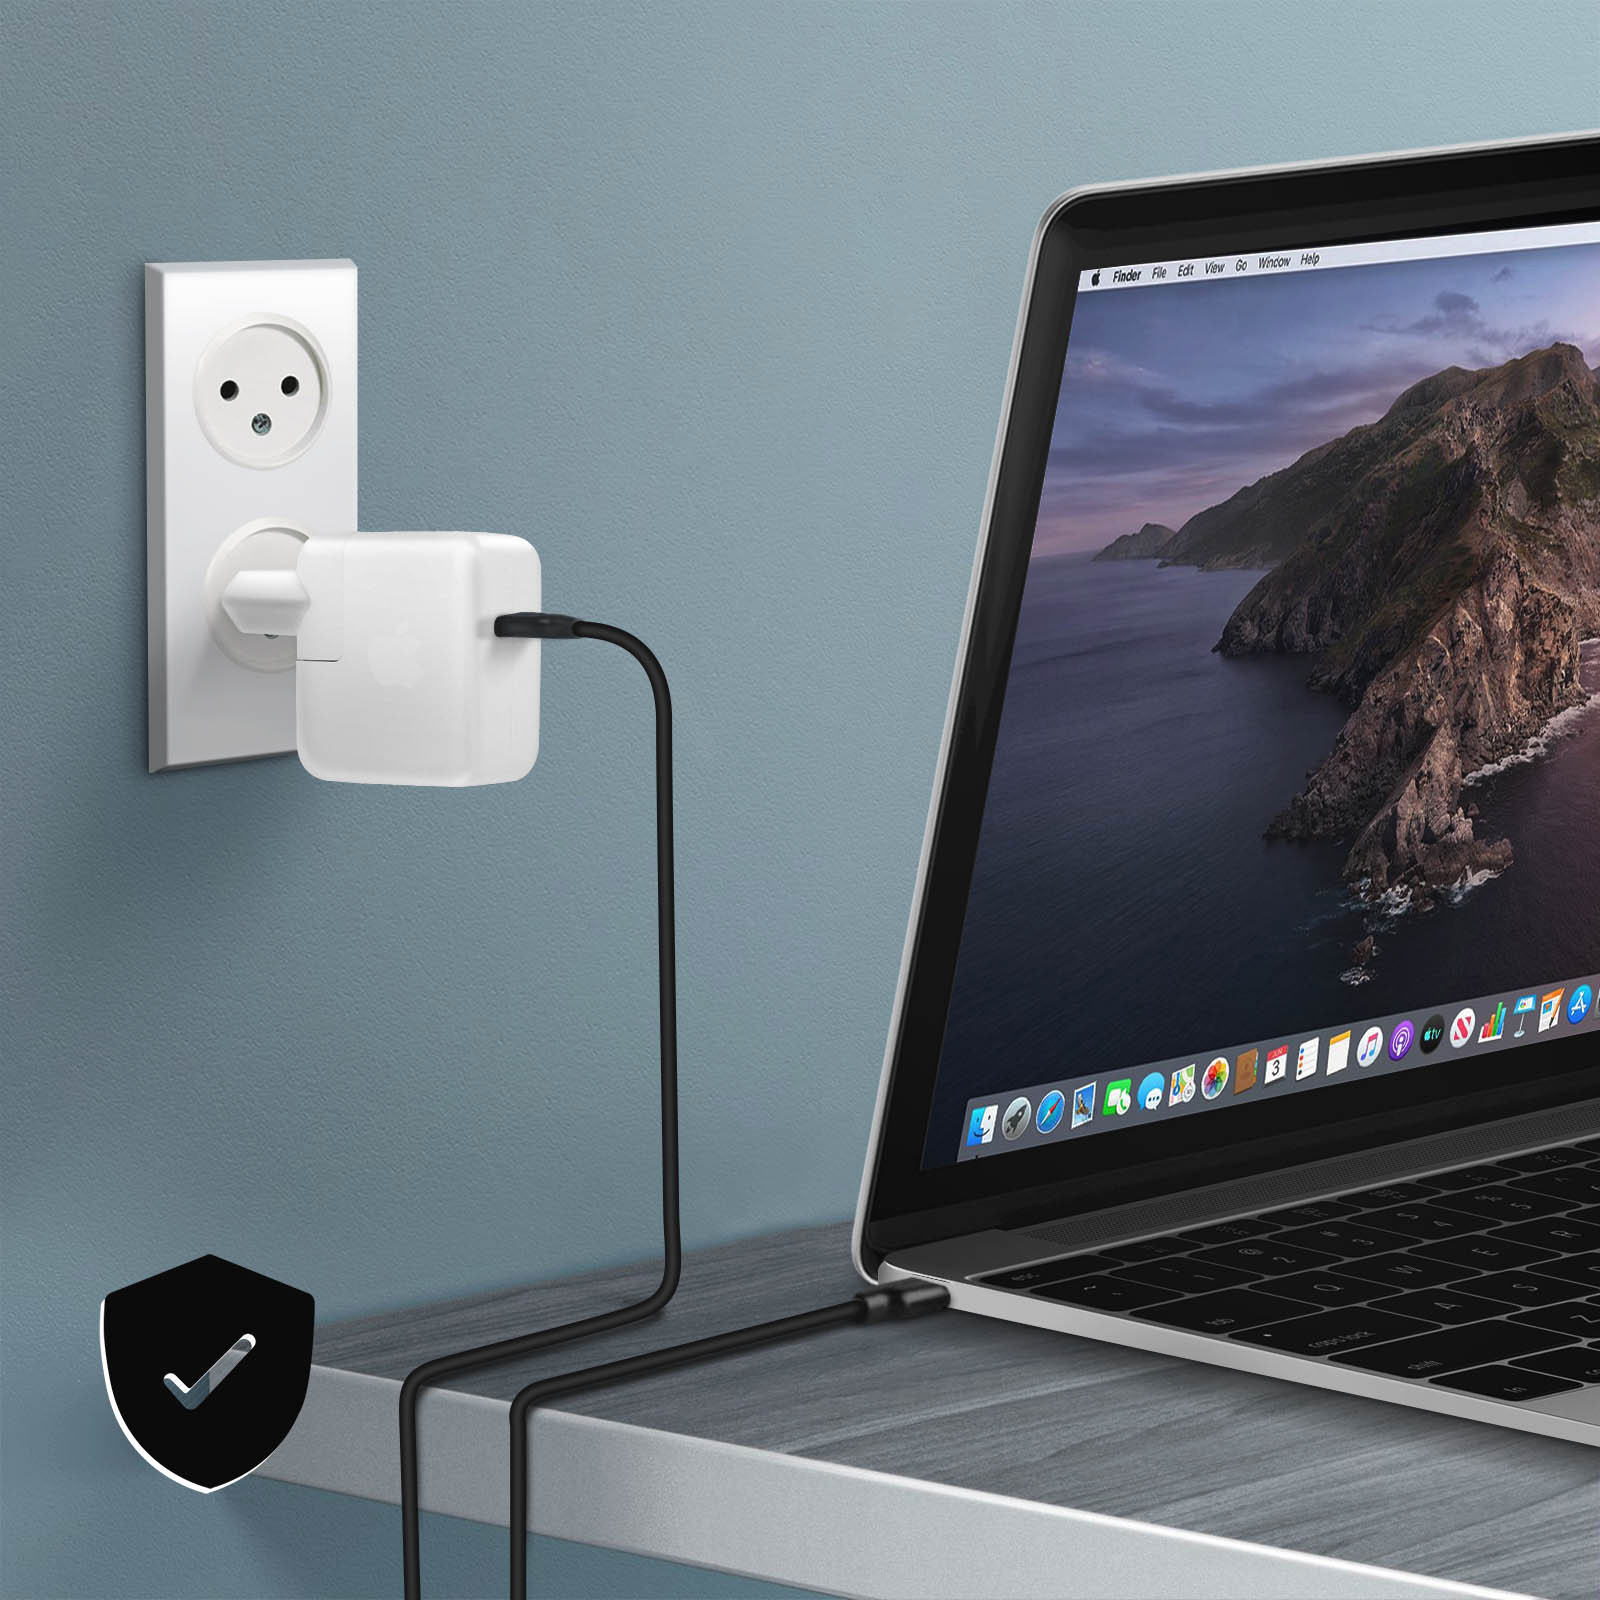 Chargeur MacBook USB C et Chargeur MacBook Air - Chargeur pour